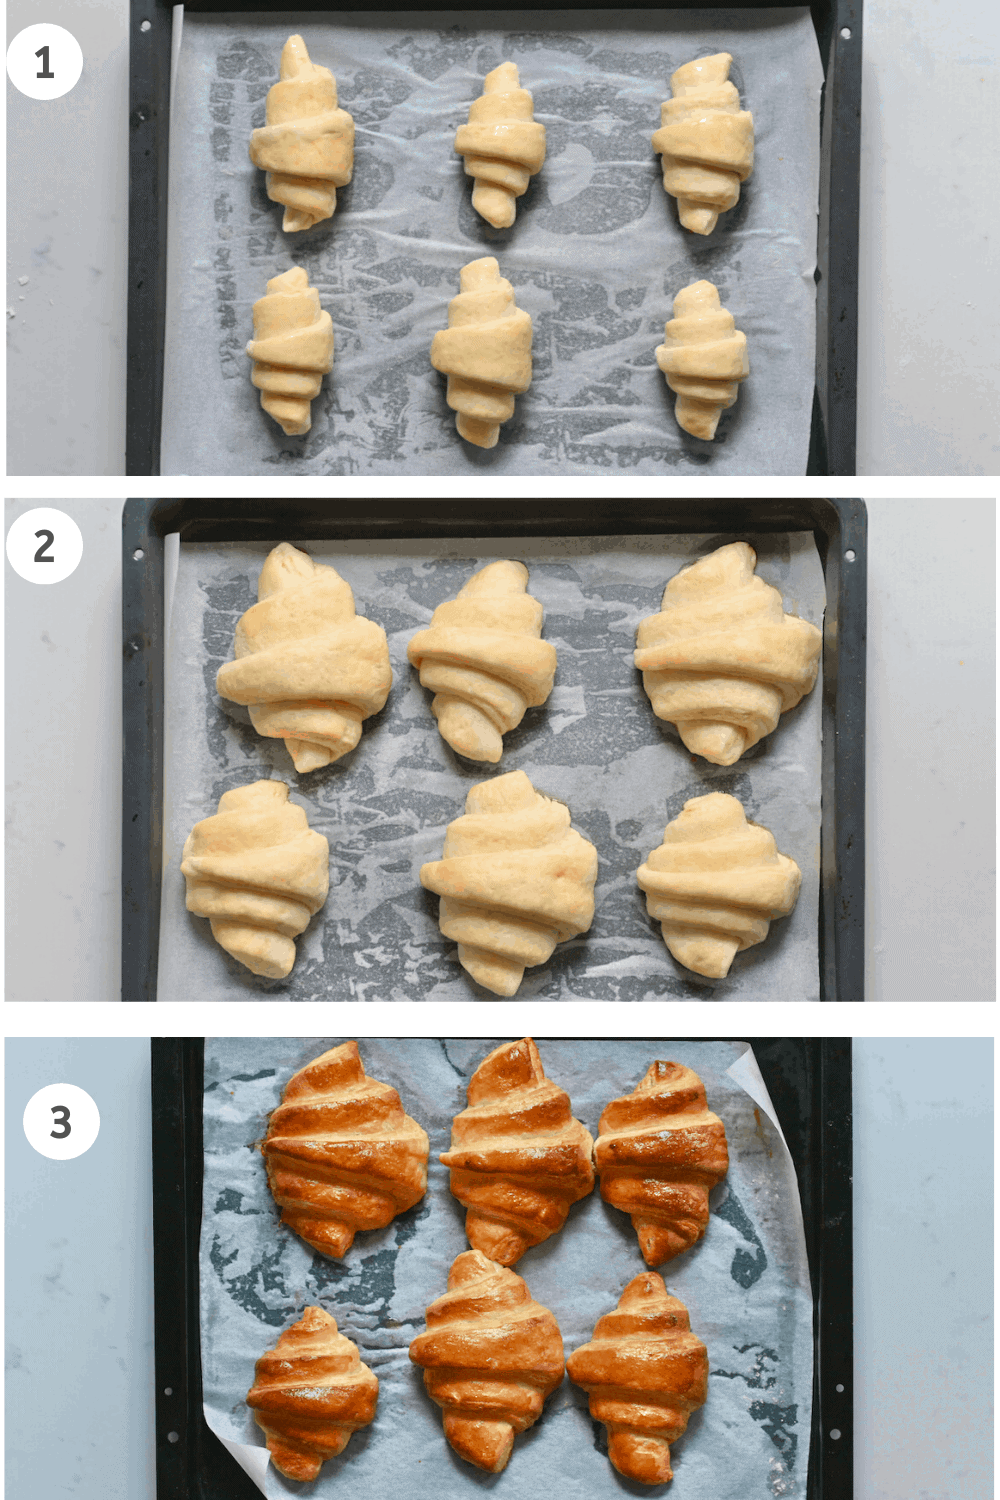 Homemade croissants - steps